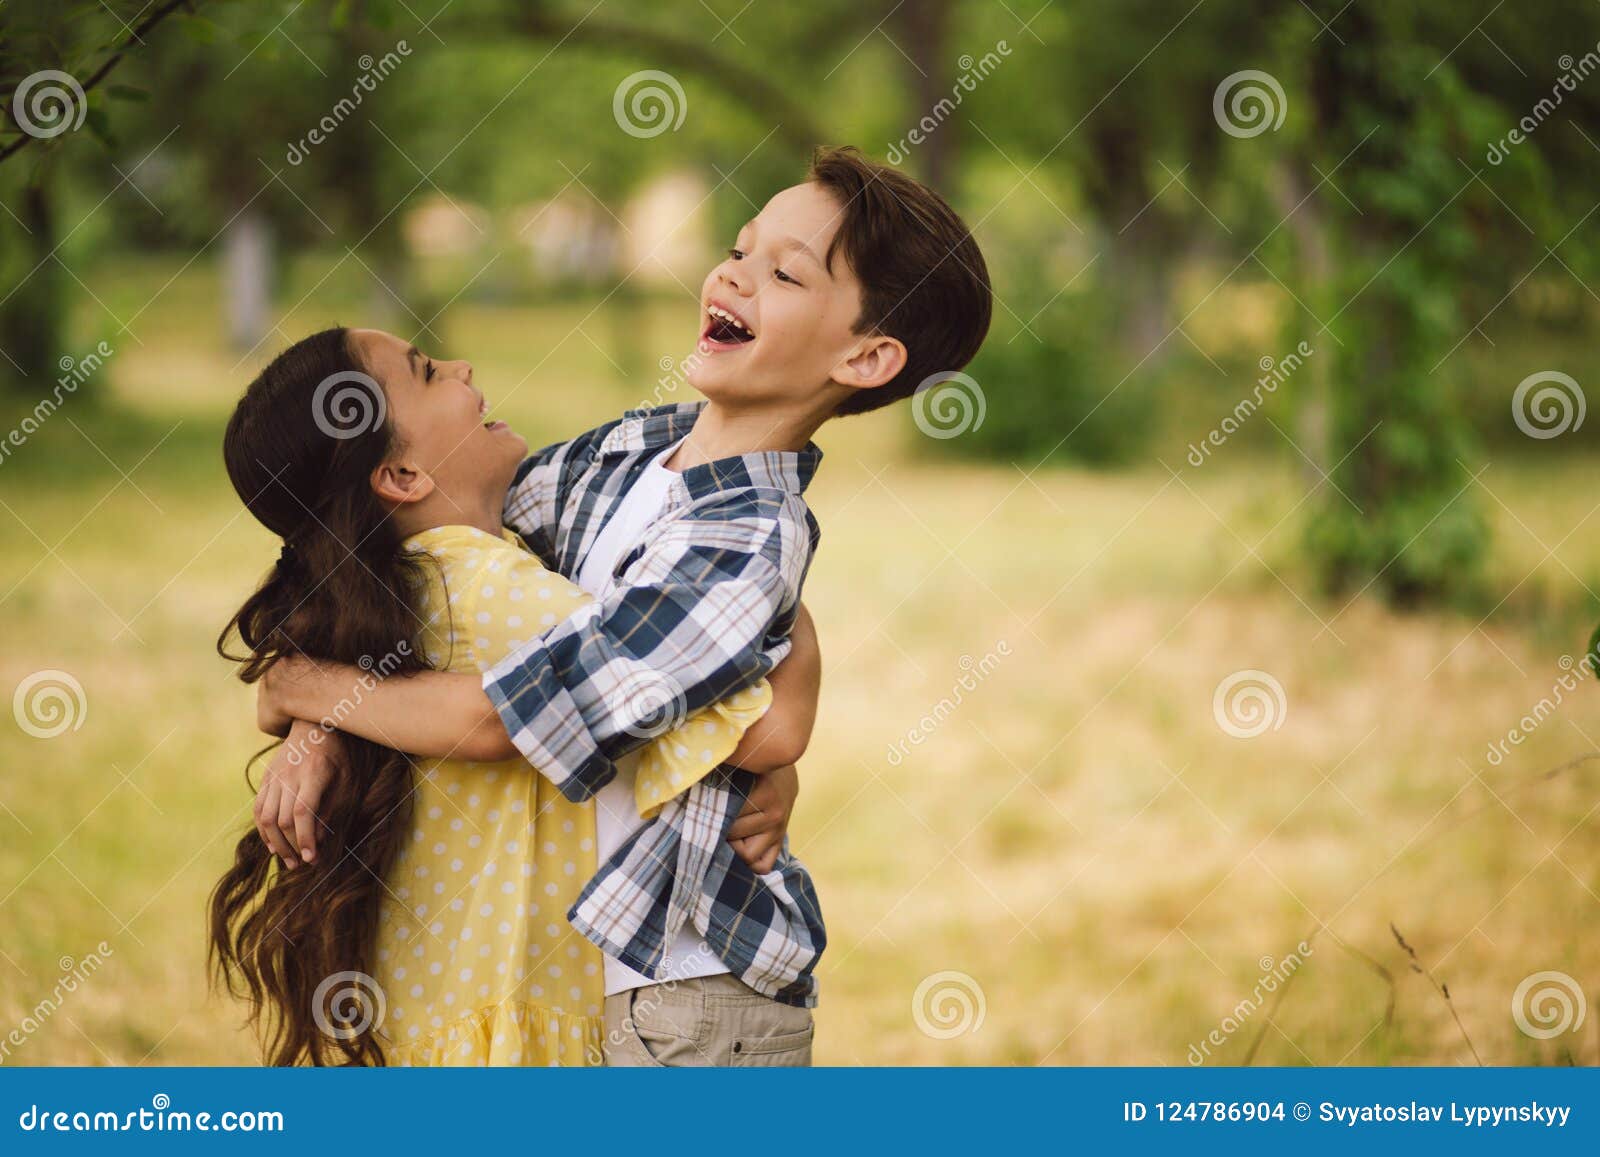 Little kids hugging. stock photo. Image of love, flower - 124786904